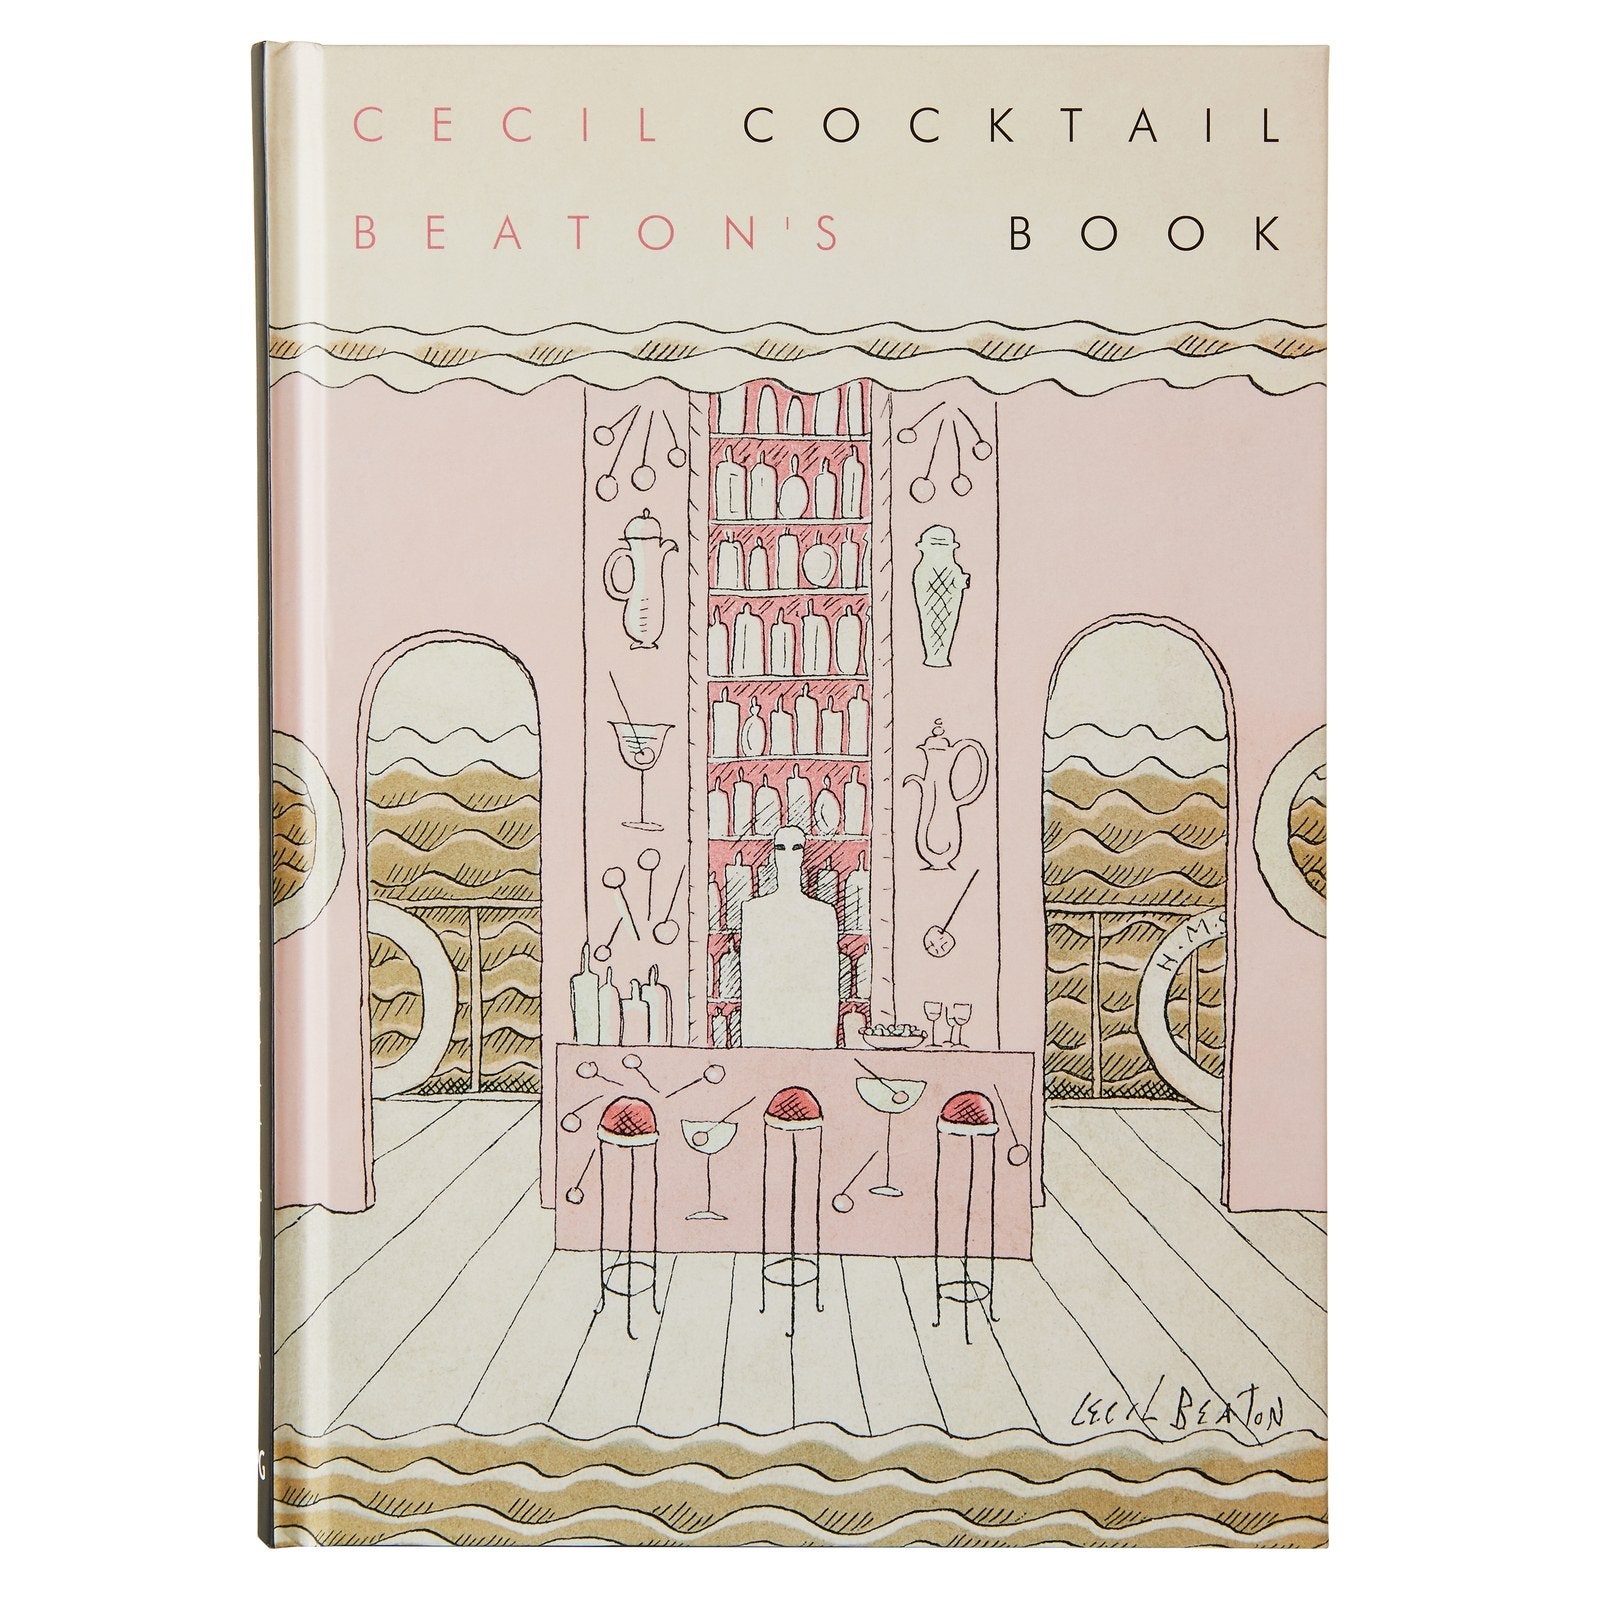 О коктейлях 1920-х читайте в книге со снимками Сесила Битона, работавшего с Vogue сто лет назад